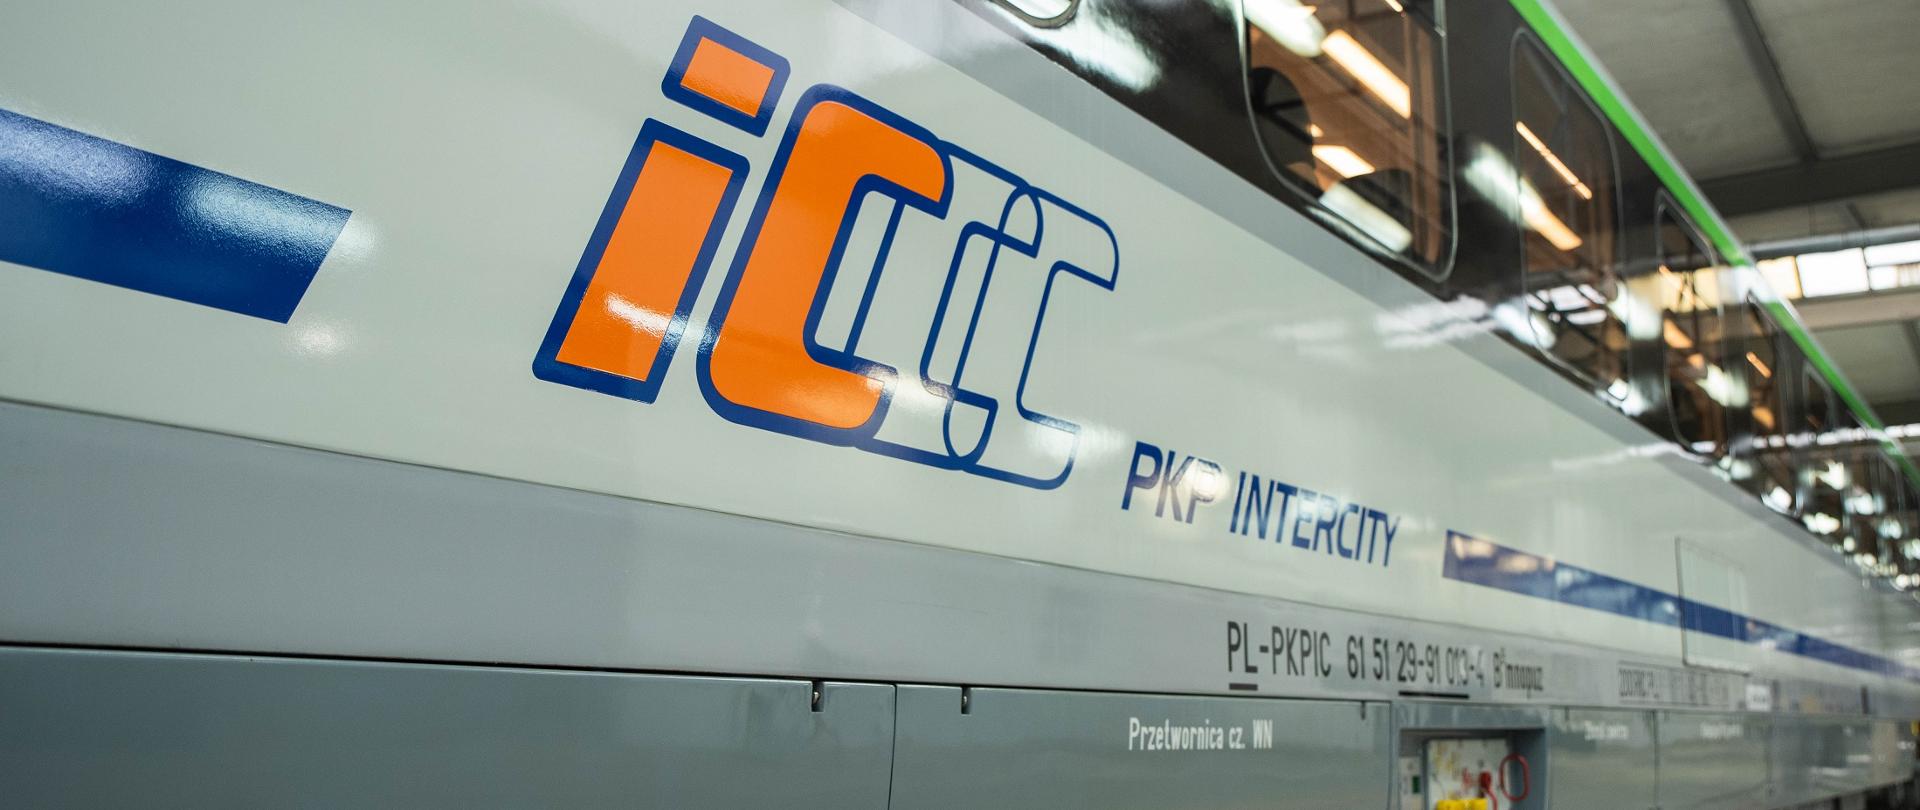 Pierwsze nowe wagony i unowocześnione lokomotywy zasilają flotę PKP Intercity 